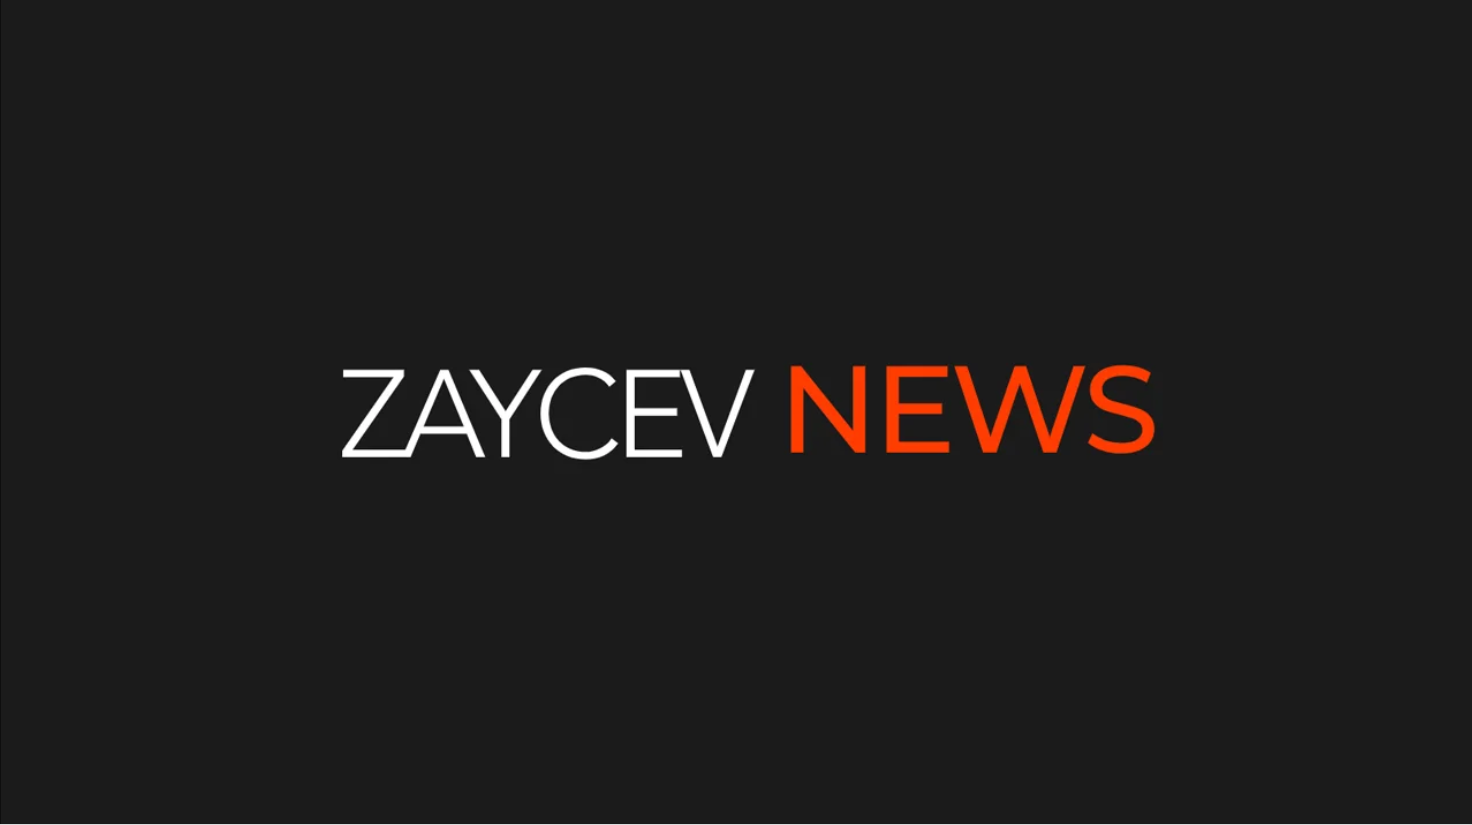 Подскаст ZAYCEV NEWS 15.12.2022